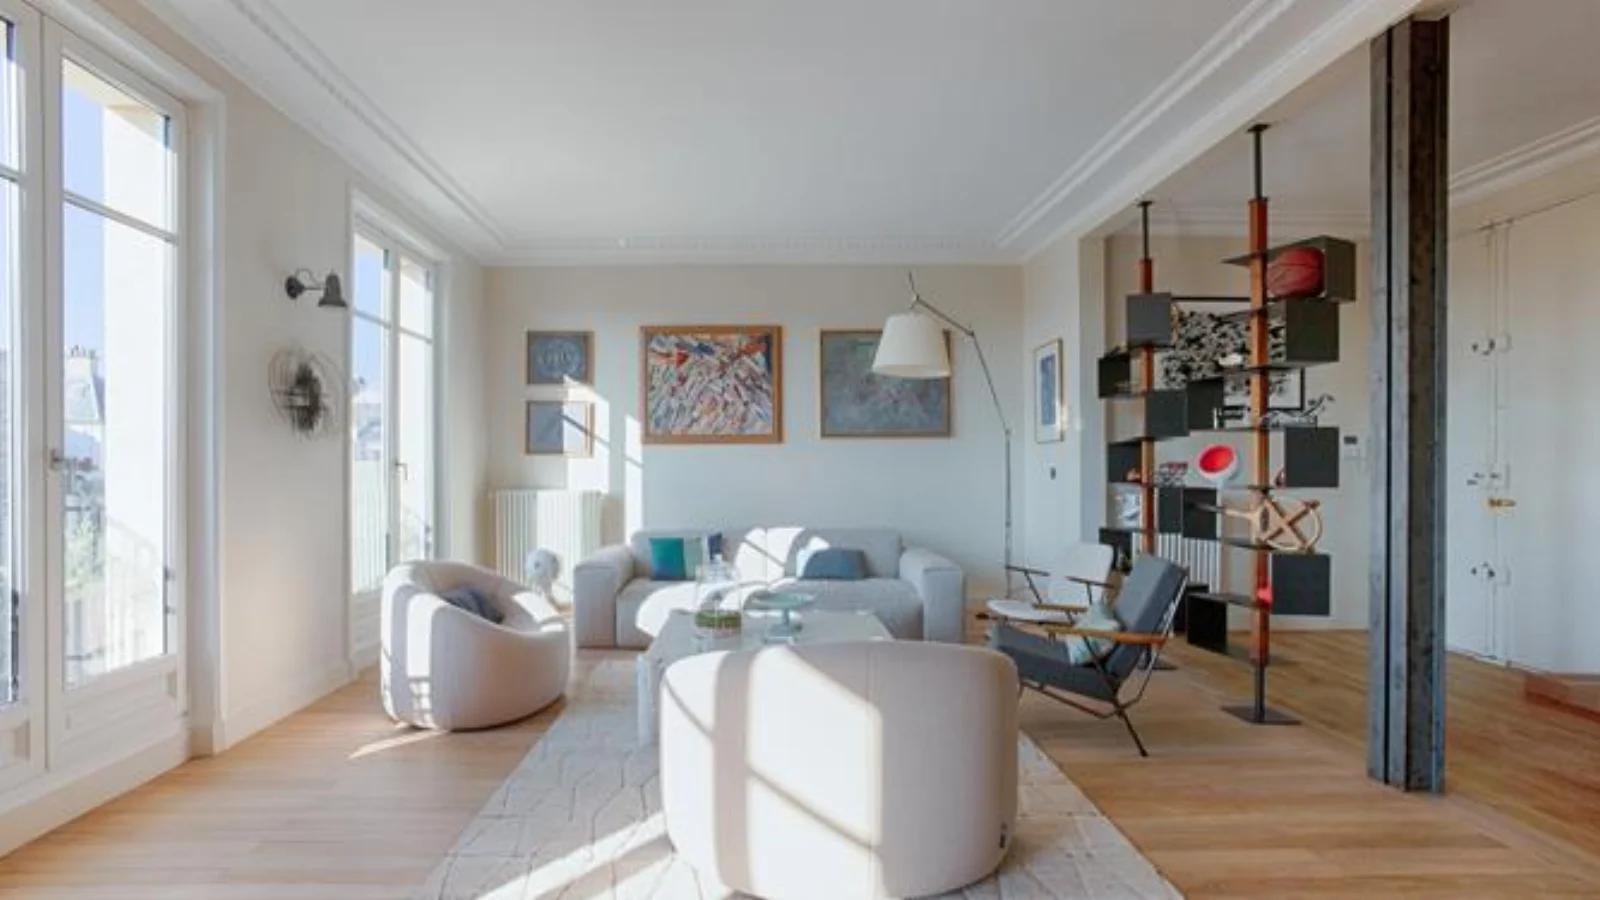 Living room in Duplex apartment in the Paris skyline - 16th arrondissement - 1